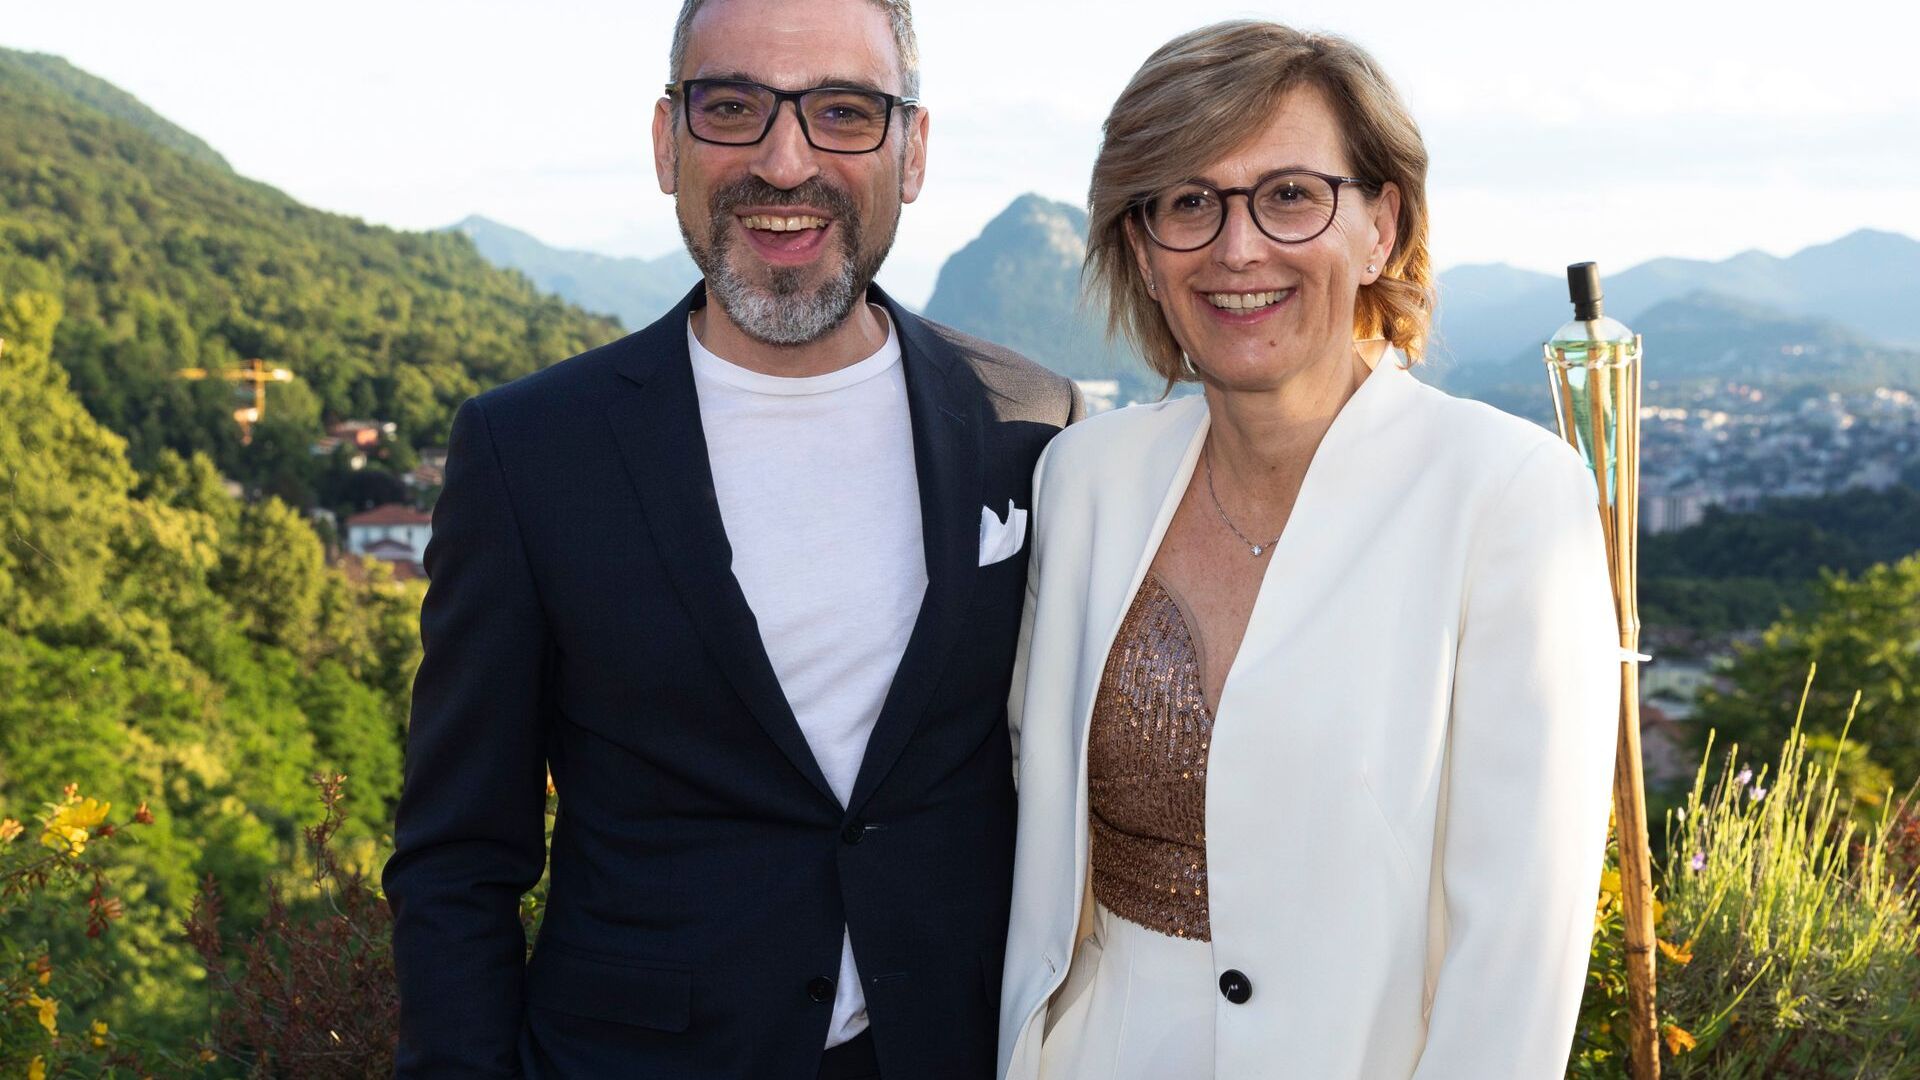 社長のクリスティーナ・ジョットと副社長のルカ・マウリエロが、ated-ICT Ticino の新しいトップマネジメントを体現